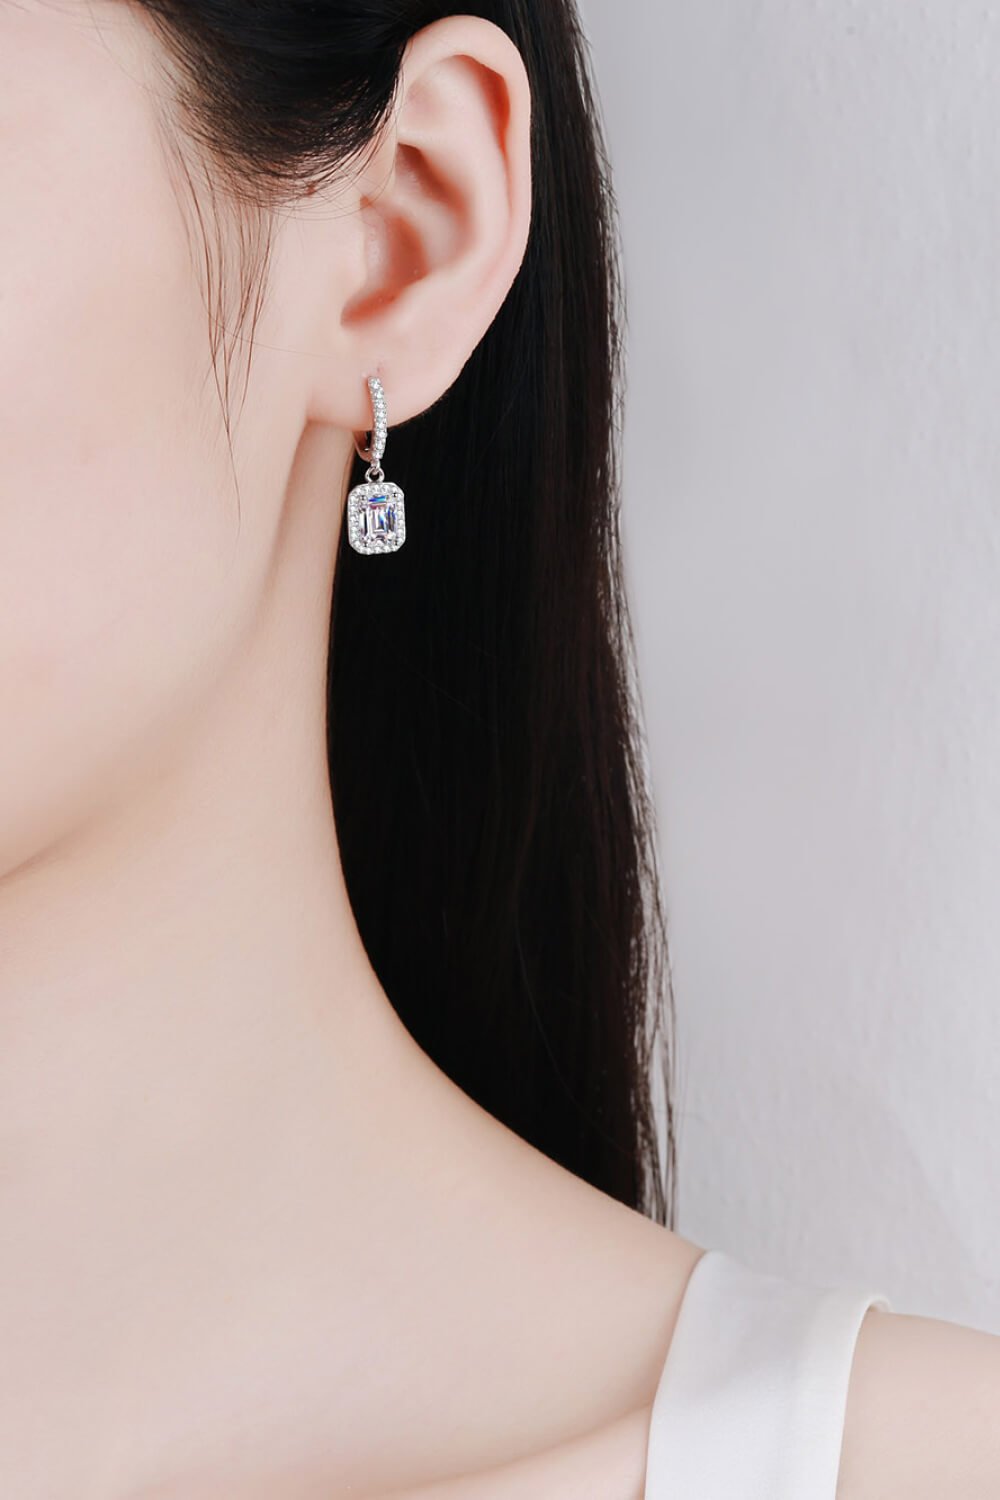 2 Carat Moissanite 925 Sterling Silver Women's Drop Earrings